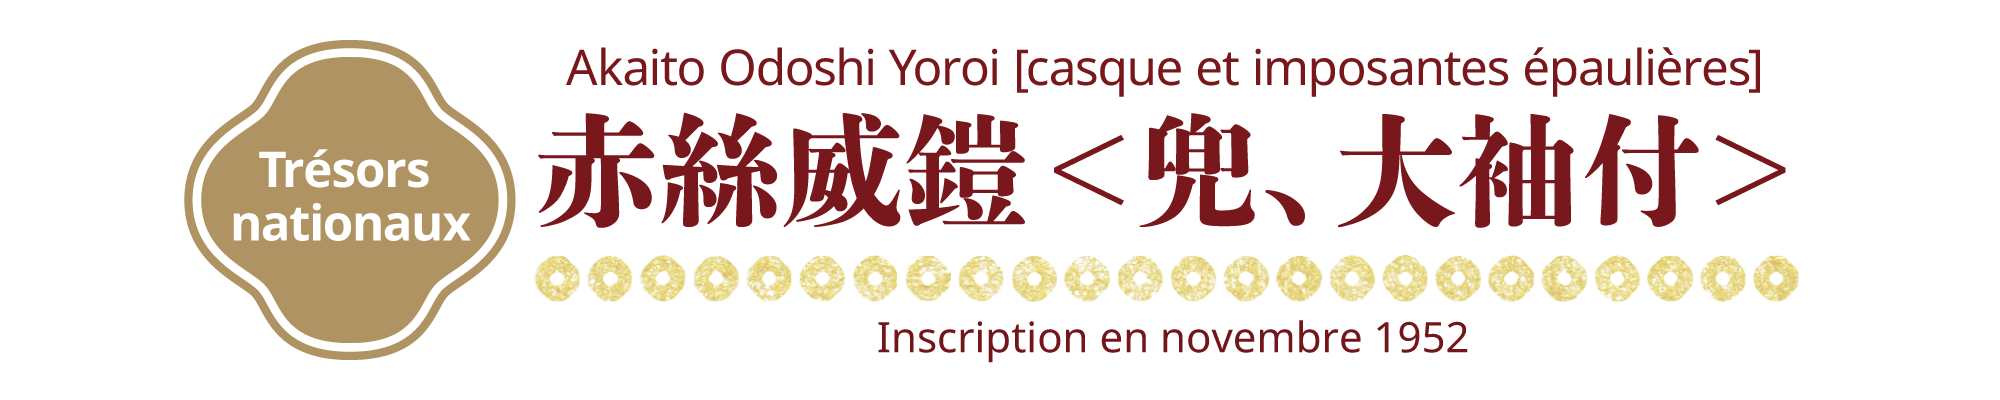 [Trésors nationaux]Akaito Odoshi Yoroi [casque et imposantes épaulières], Inscription en novembre 1952